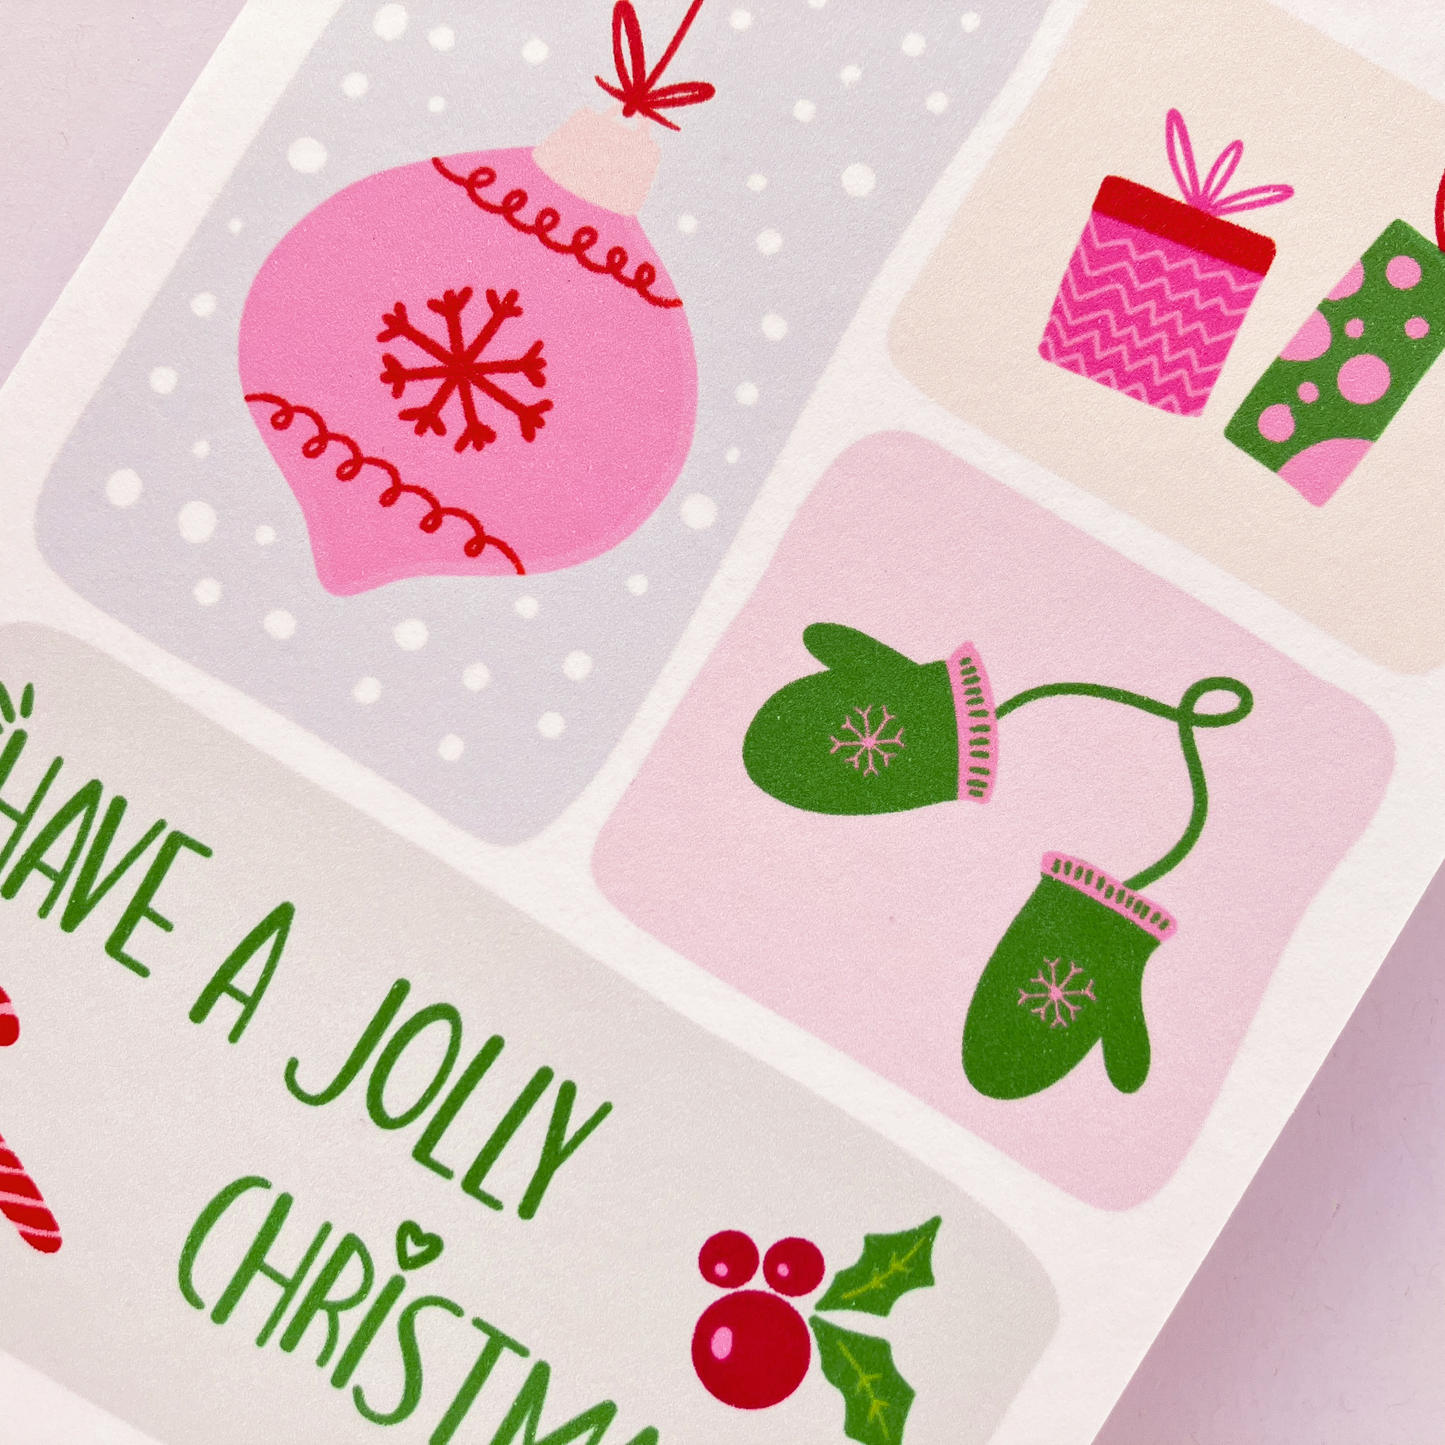 Have a Jolly Christmas Card